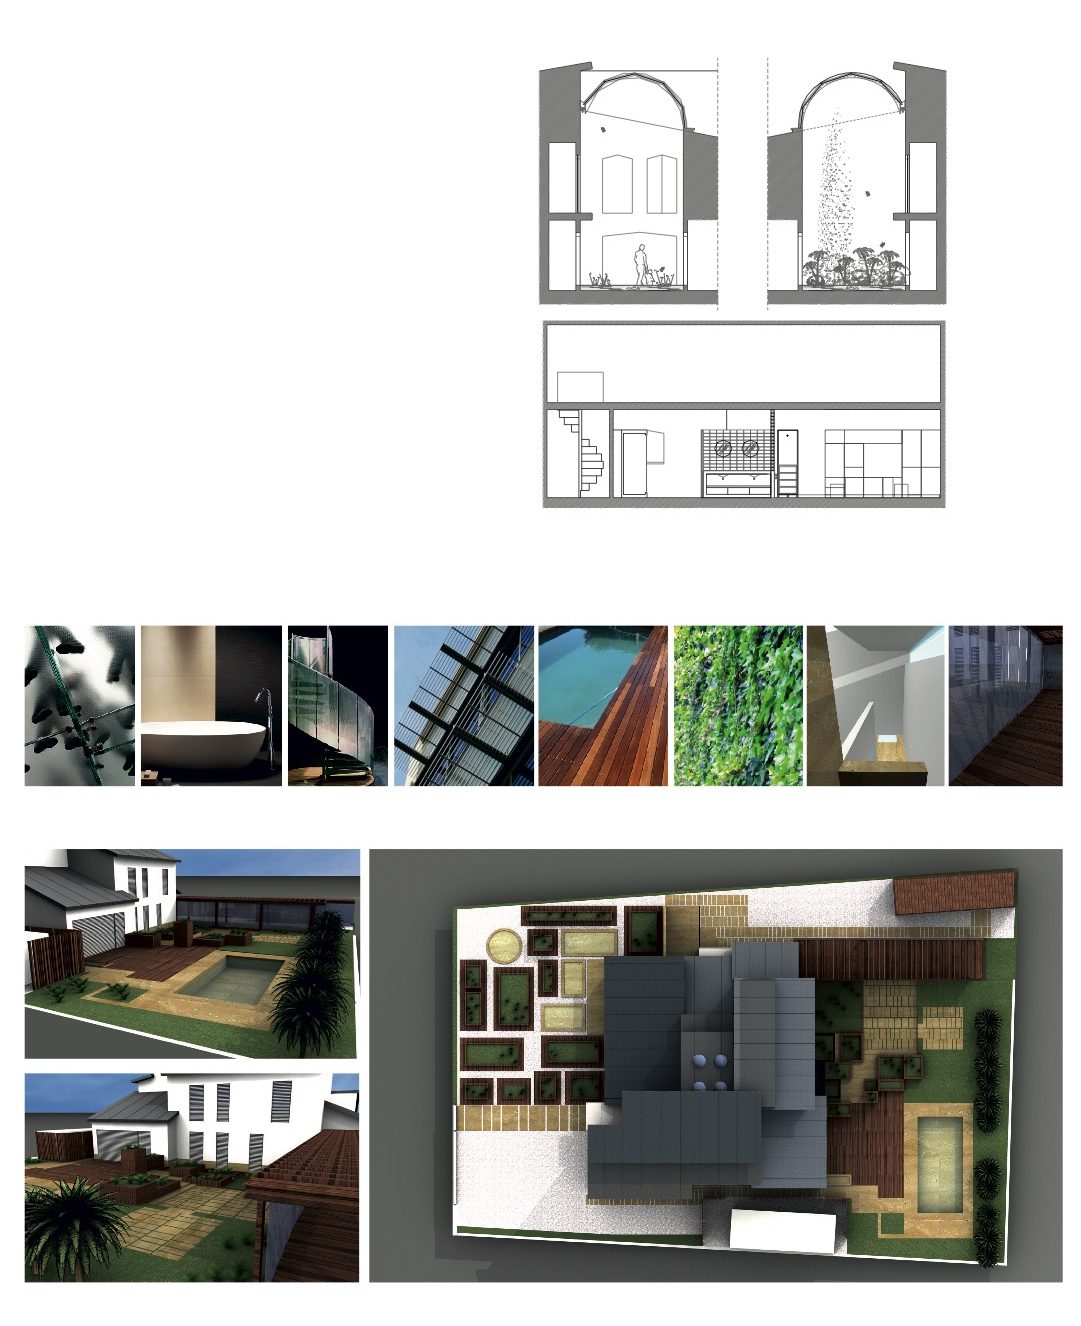 Remodelação Moradia Vieira, Marisol, Seixal - Tipologia T4  – 600 m2 de área bruta de construção em parcela de 1.088 m2.